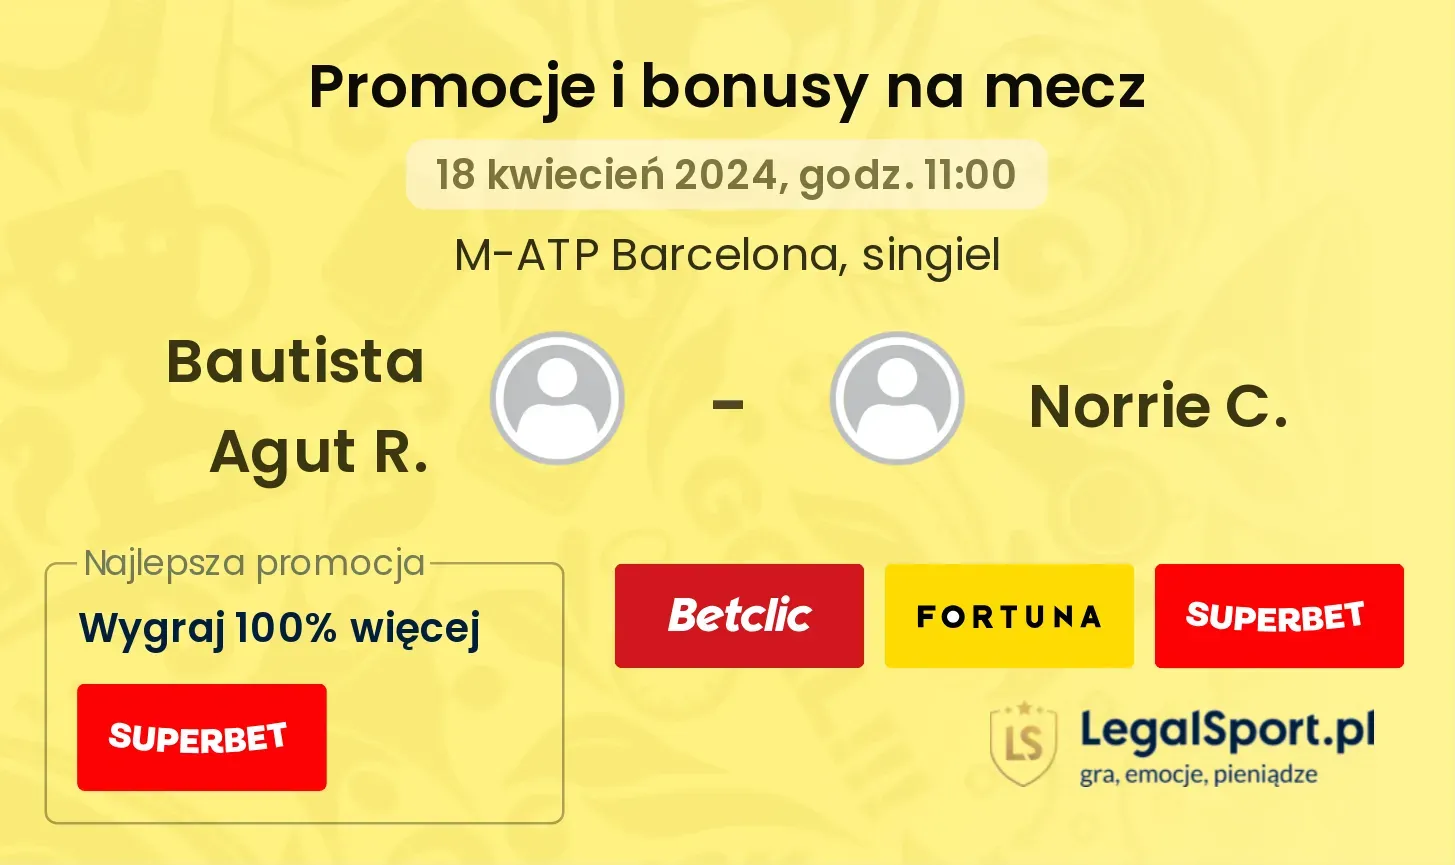 Bautista Agut R. - Norrie C. promocje bonusy na mecz